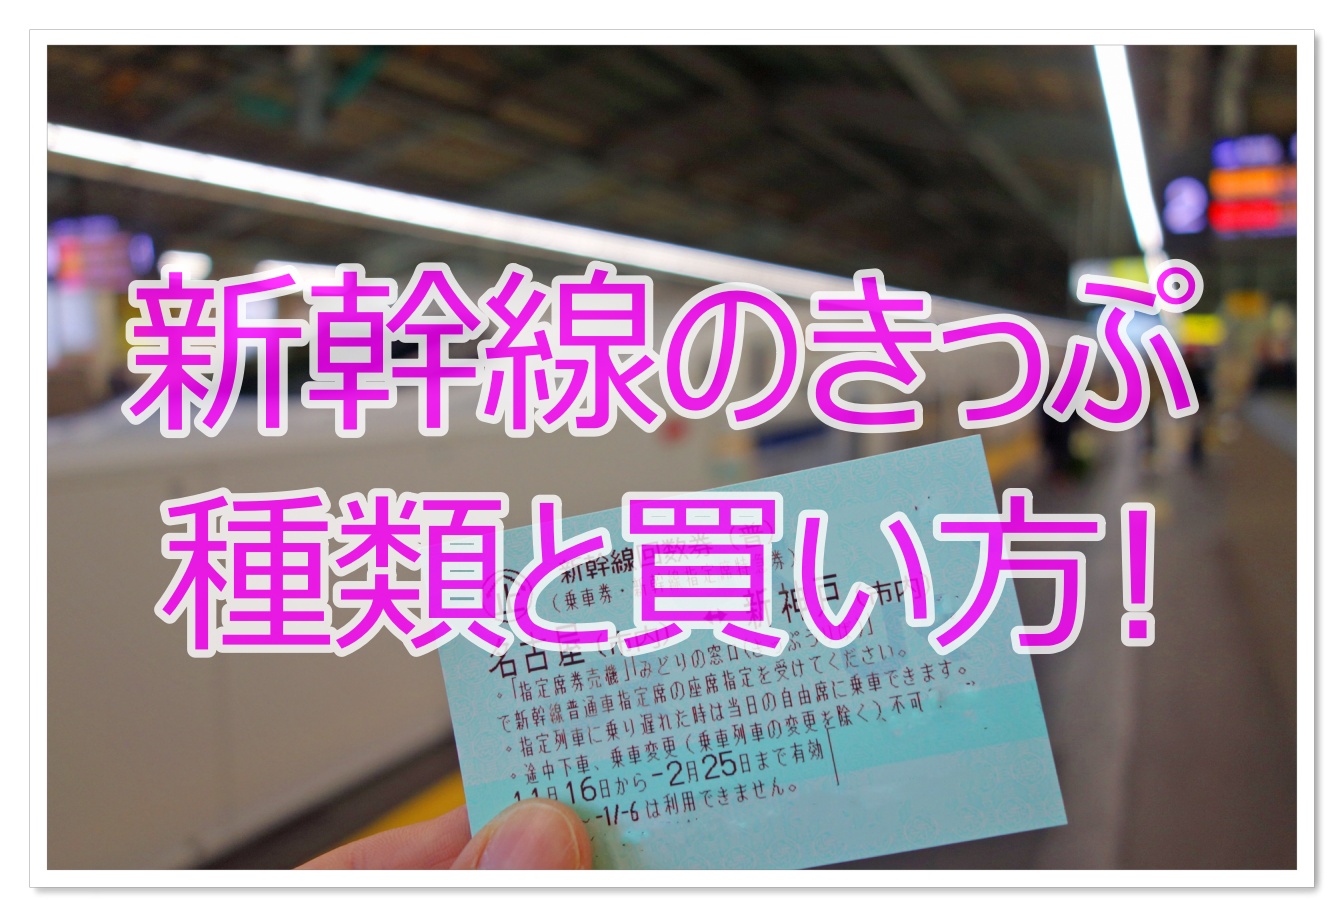 新幹線のきっぷの買い方や種類は?便利なネット予約もご紹介!